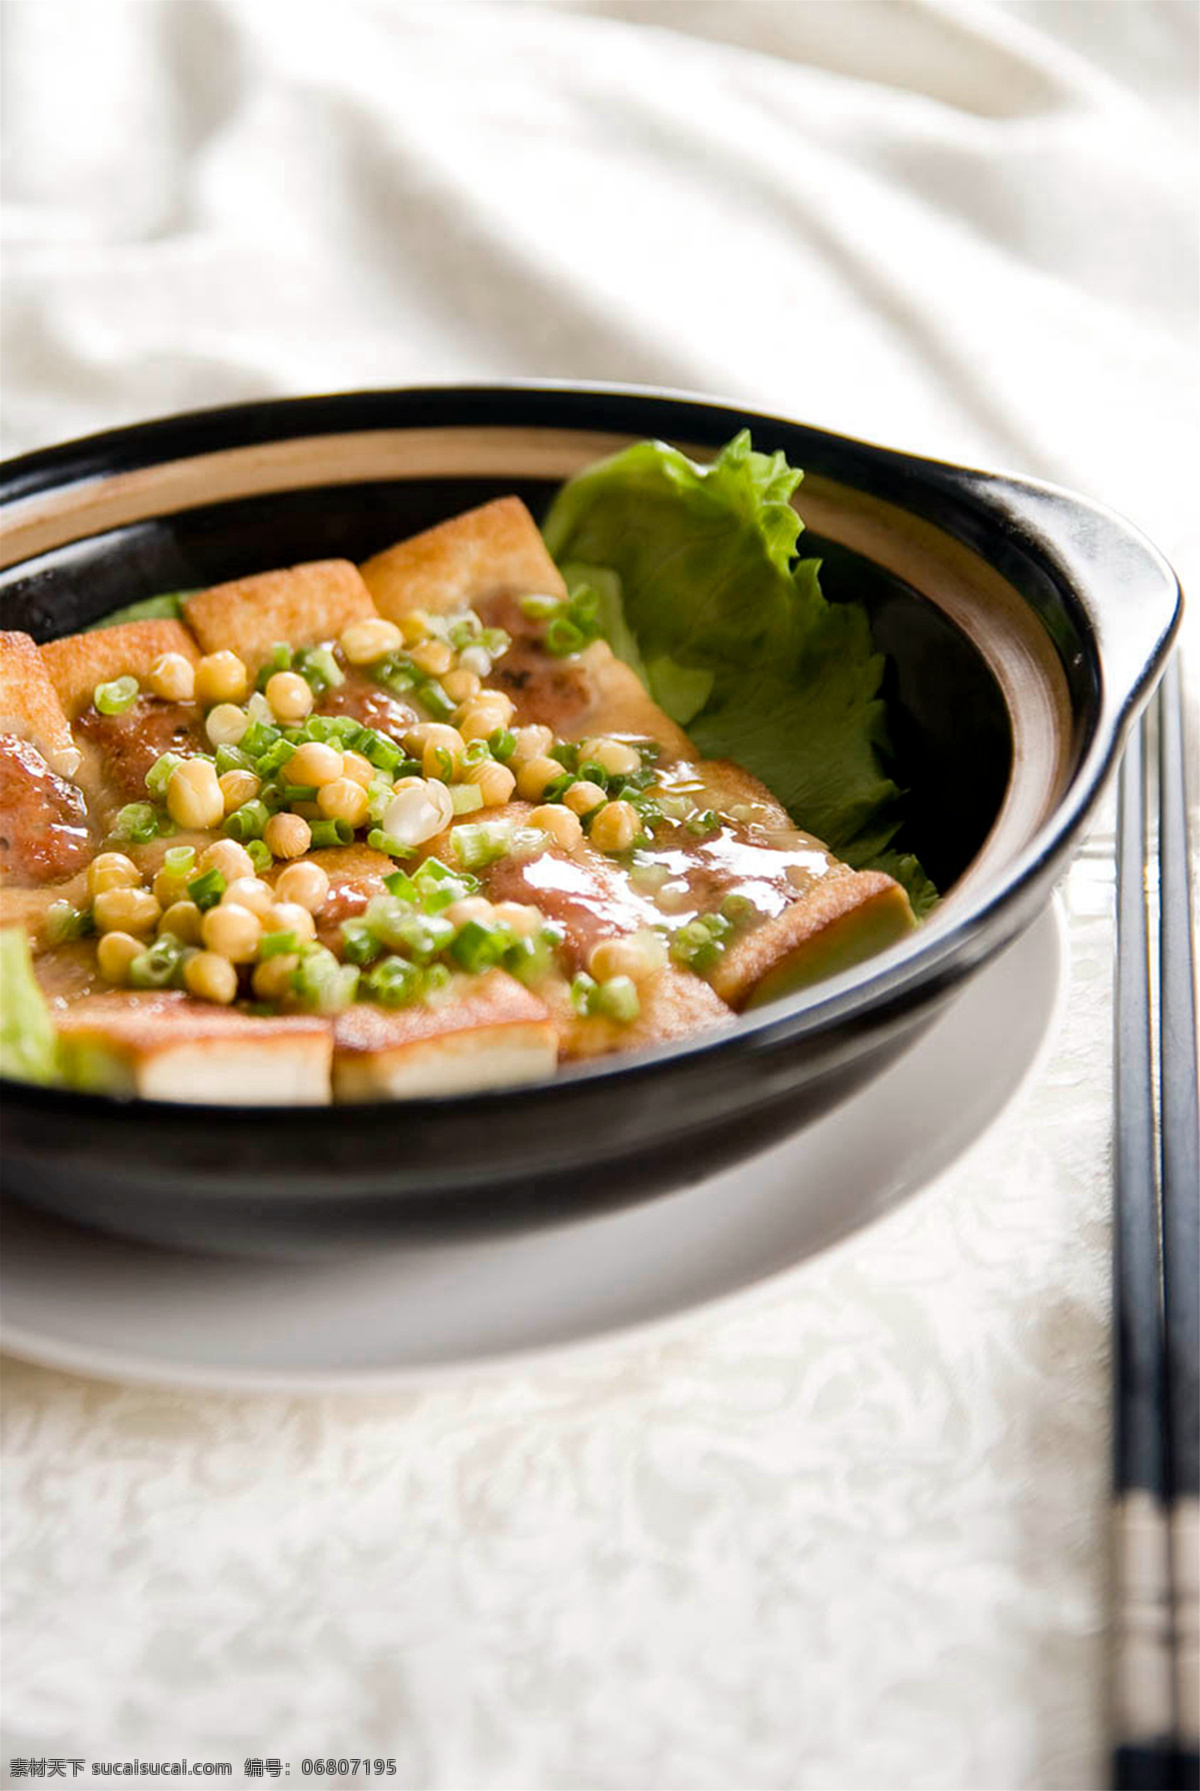 客家煎酿豆腐 美食 传统美食 餐饮美食 高清菜谱用图